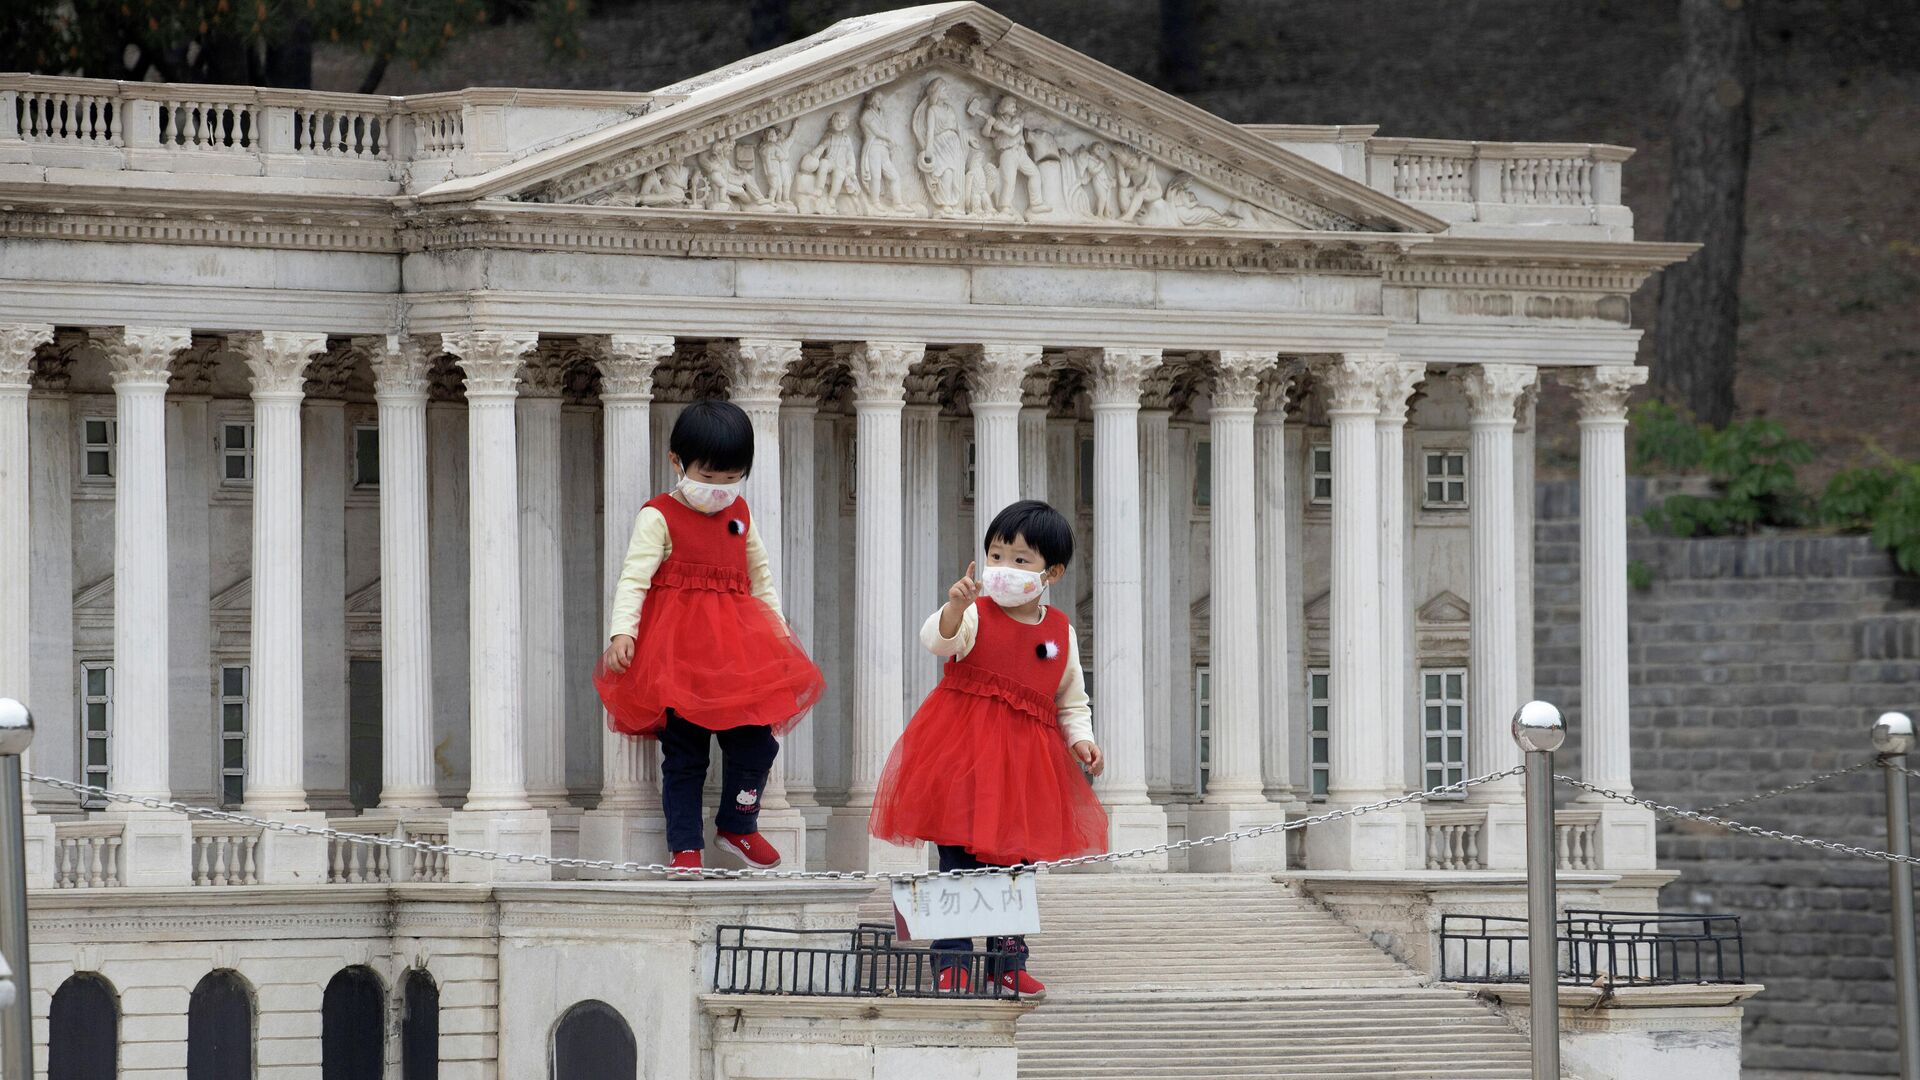 Дети на ступенях копии здания Капитолия США во Парке мира в Пекине - РИА Новости, 1920, 31.05.2021